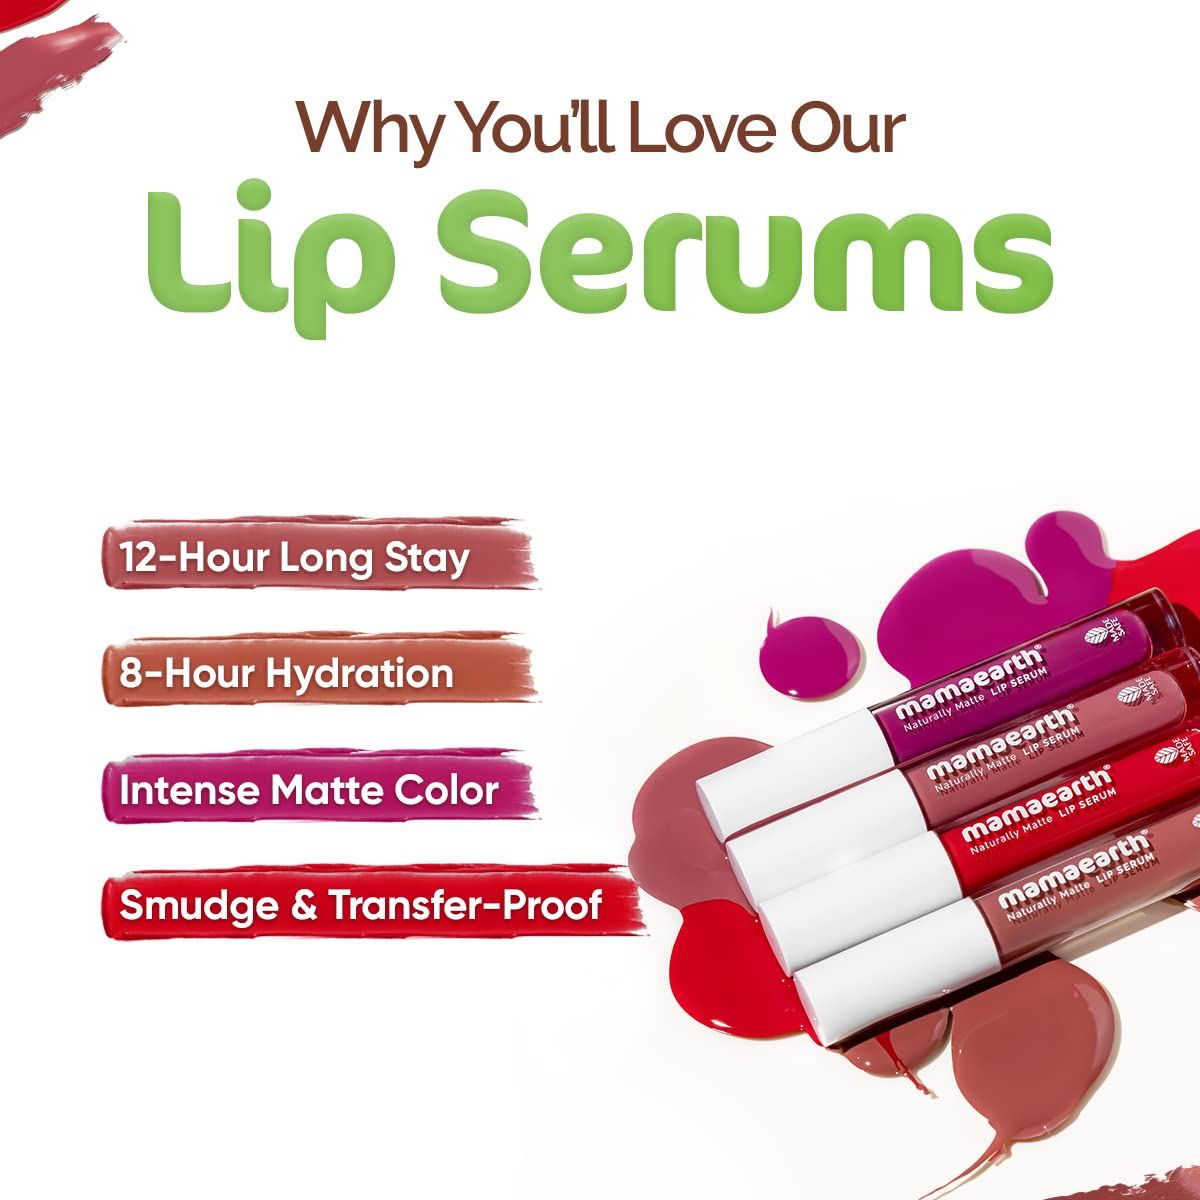 Naturally Matte Liquid Lipstick - 3 ml | Chirpy Cherry